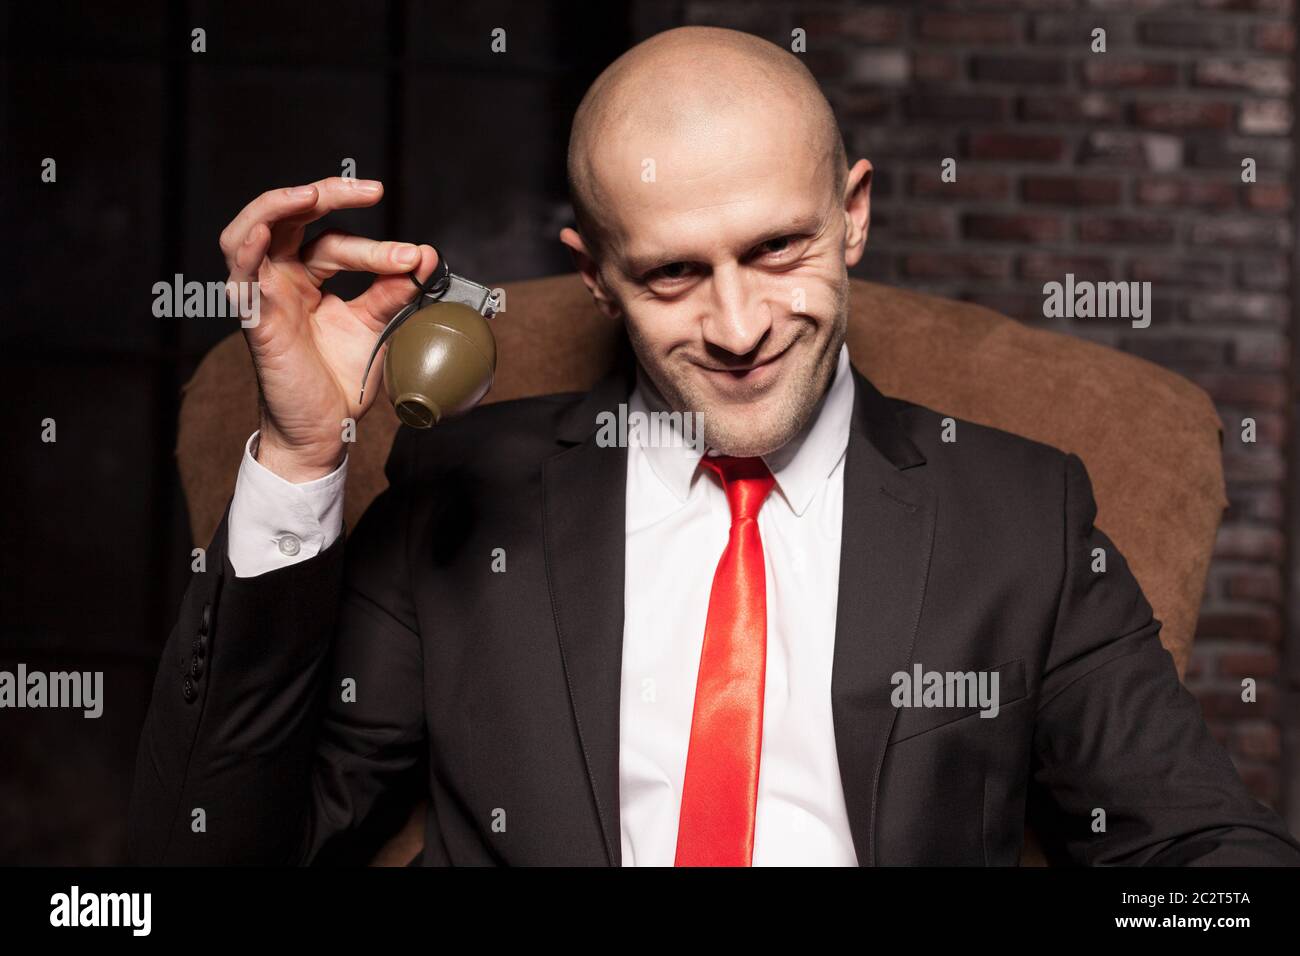 L'agent spécial chauve en costume et cravate rouge tire une grenade borne,  un travail dangereux Photo Stock - Alamy